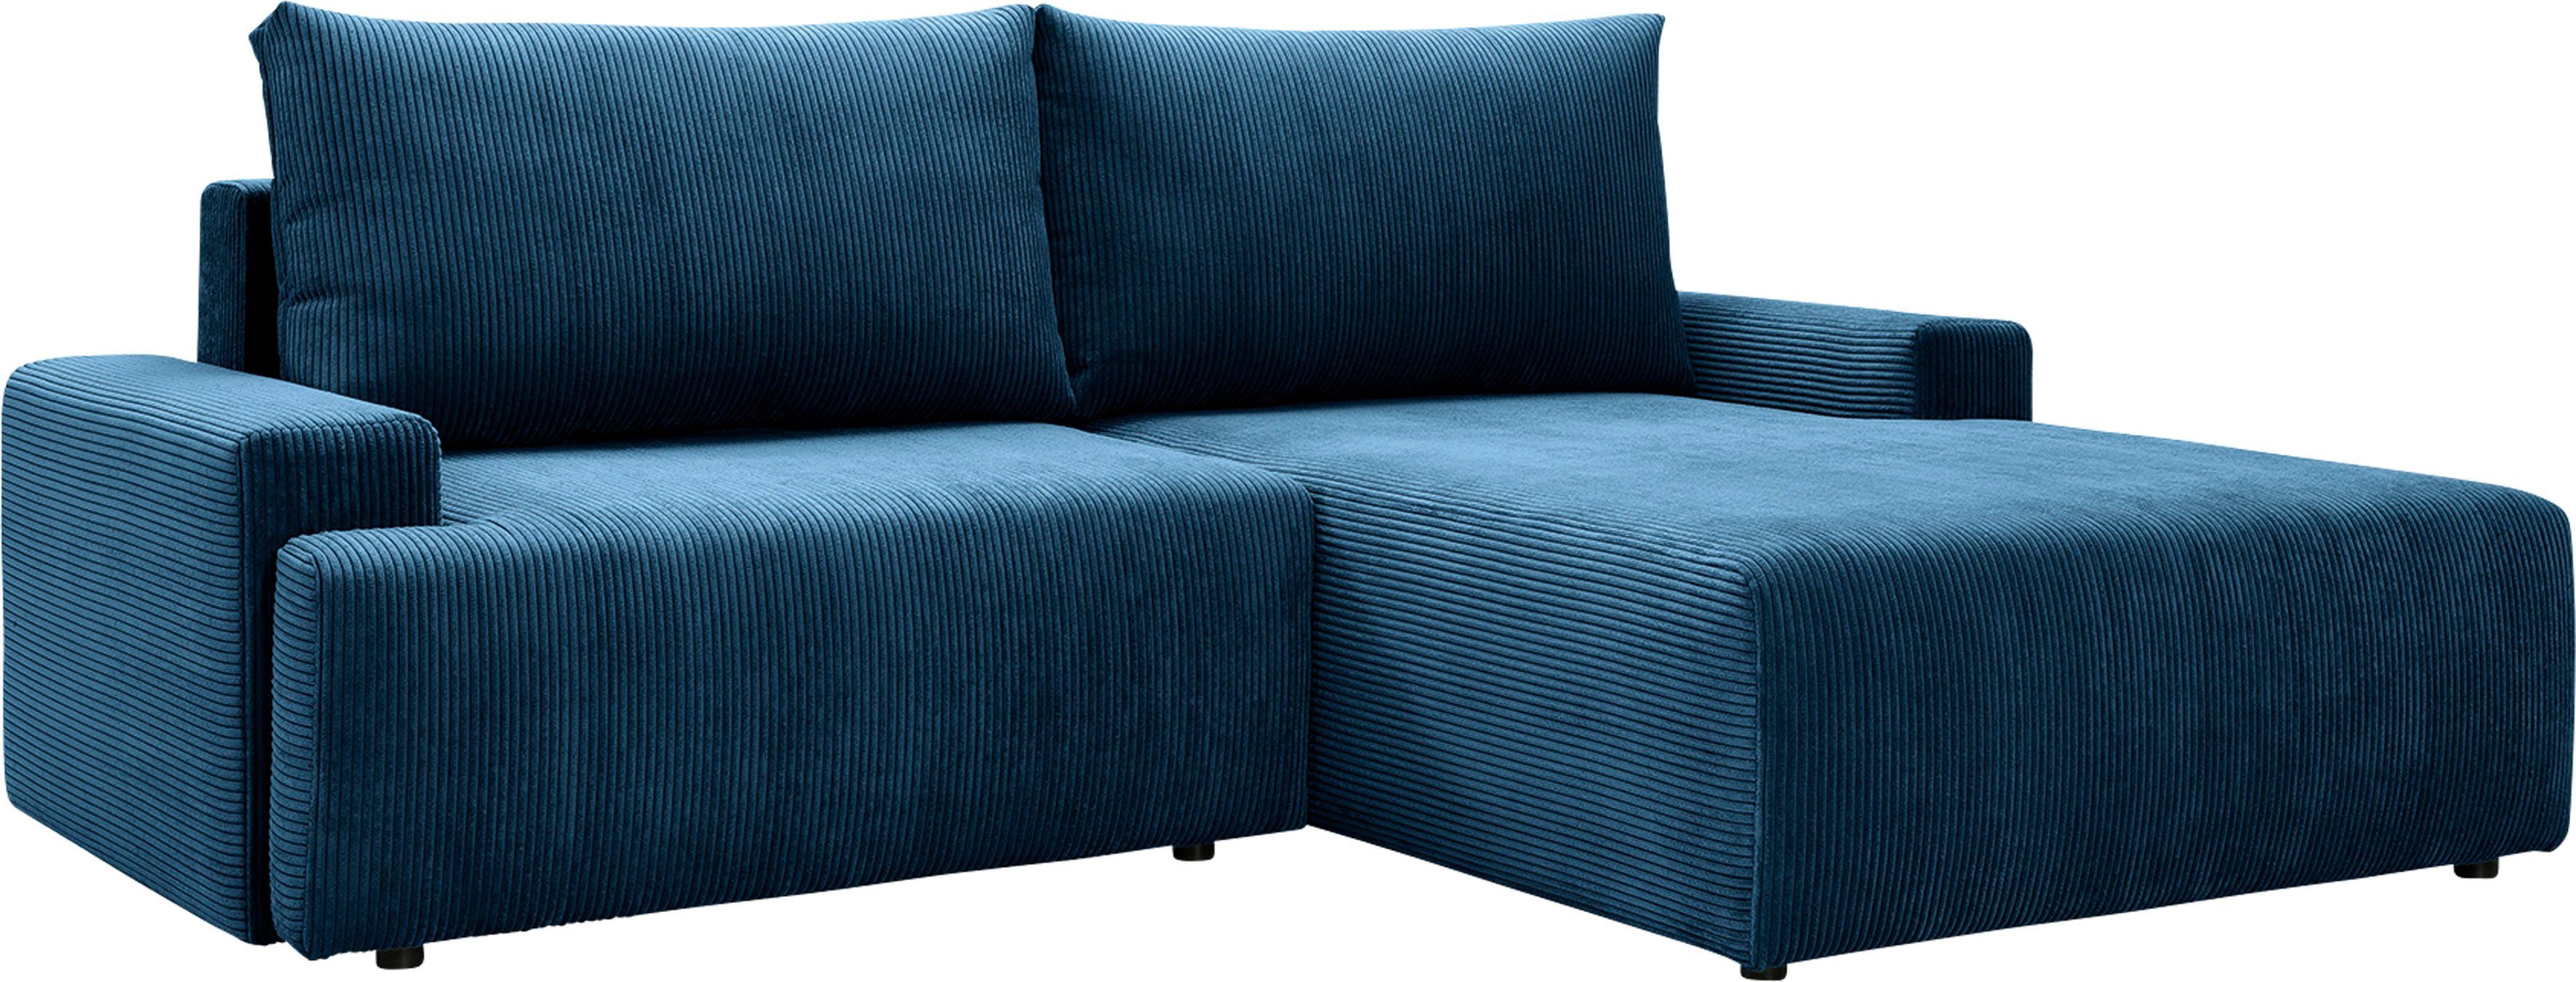 Ecksofa exxpo - fashion verschiedenen inklusive Bettkasten und Cord-Farben navy Orinoko, sofa in Bettfunktion